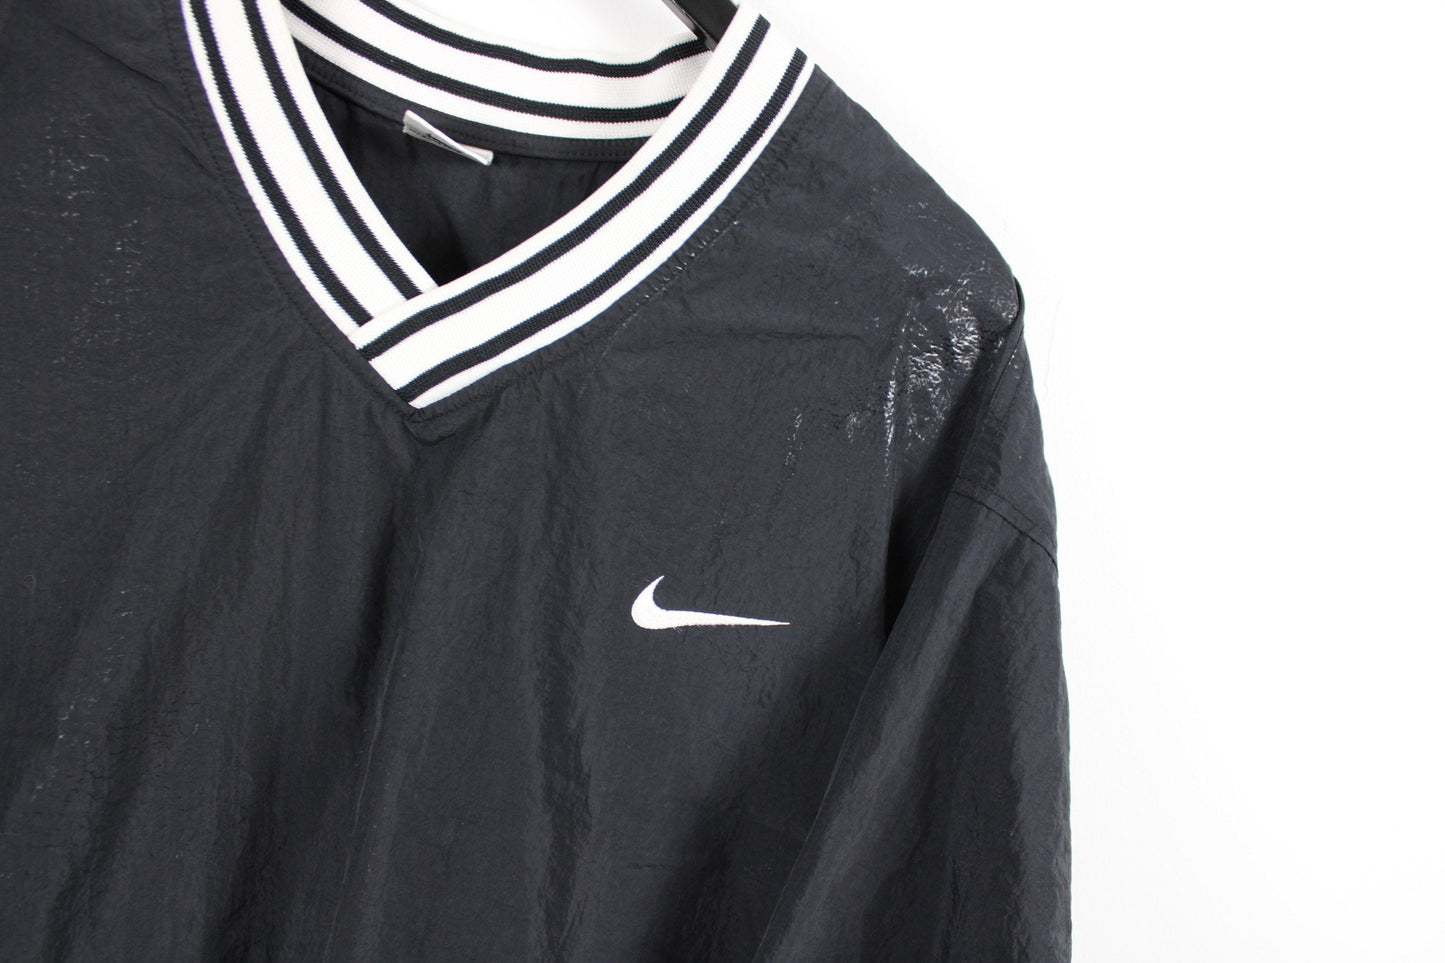 Nike Anorak-Jacket / Vintage 90s Outerwear Shell Wind-Breaker Coat